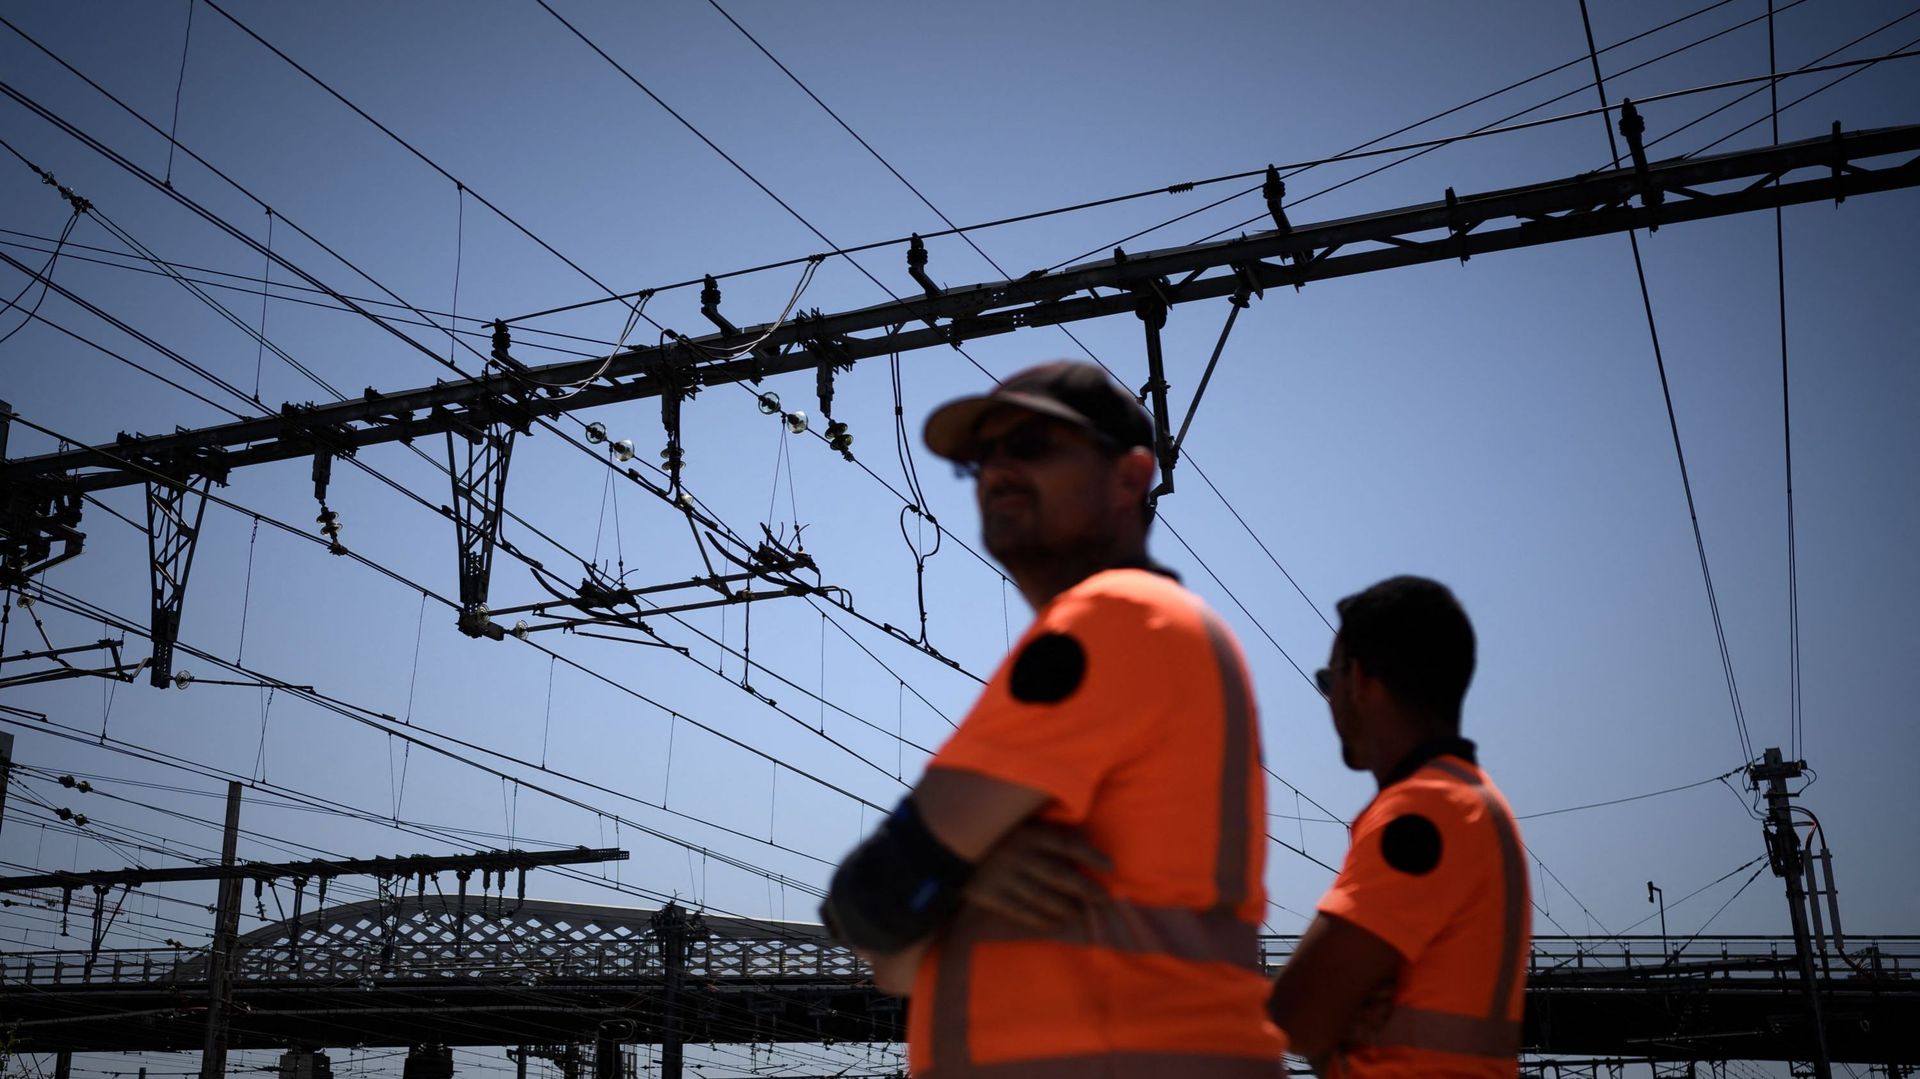 Des employés de la SNCF se tiennent sous des lignes électriques à la gare de Bordeaux, dans le sud-ouest de la France, le 15 juin 2022, alors qu’une vague de chaleur frappe la France.